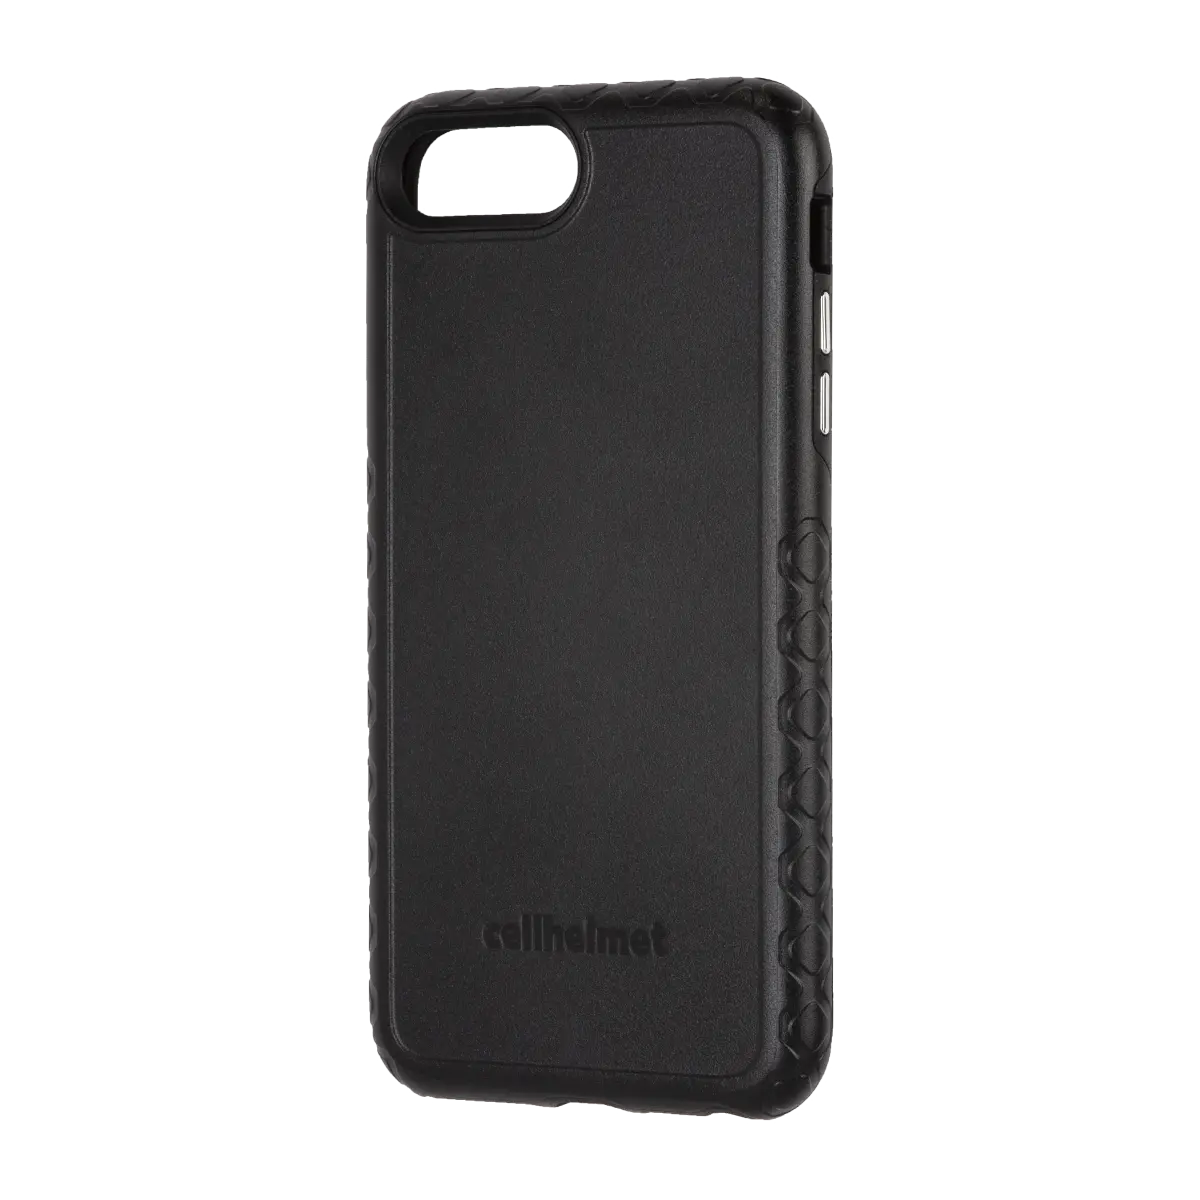 cellhelmet Black Custom Case for iPhone 8 Plus